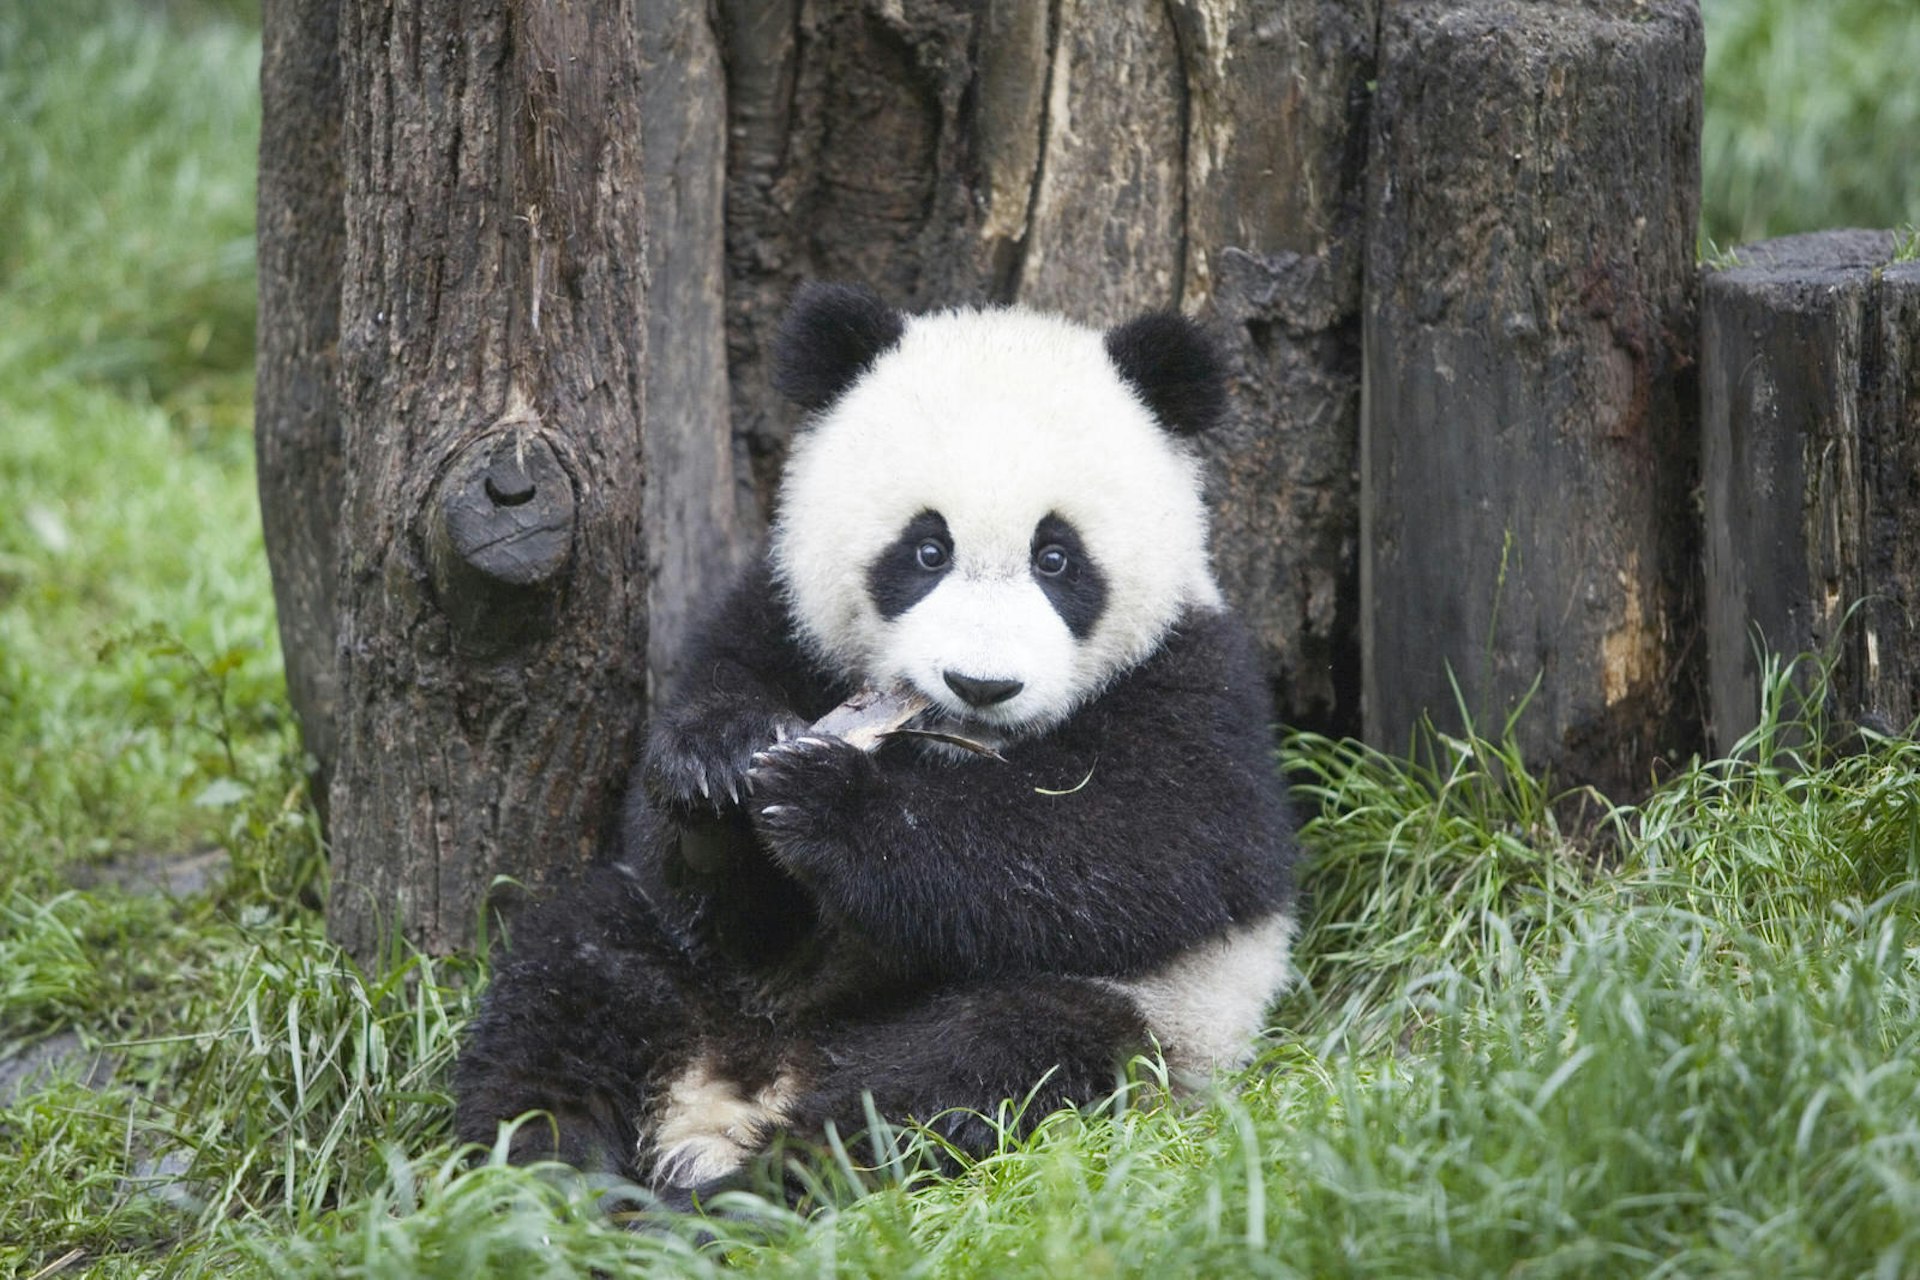 A young panda in Chengdu